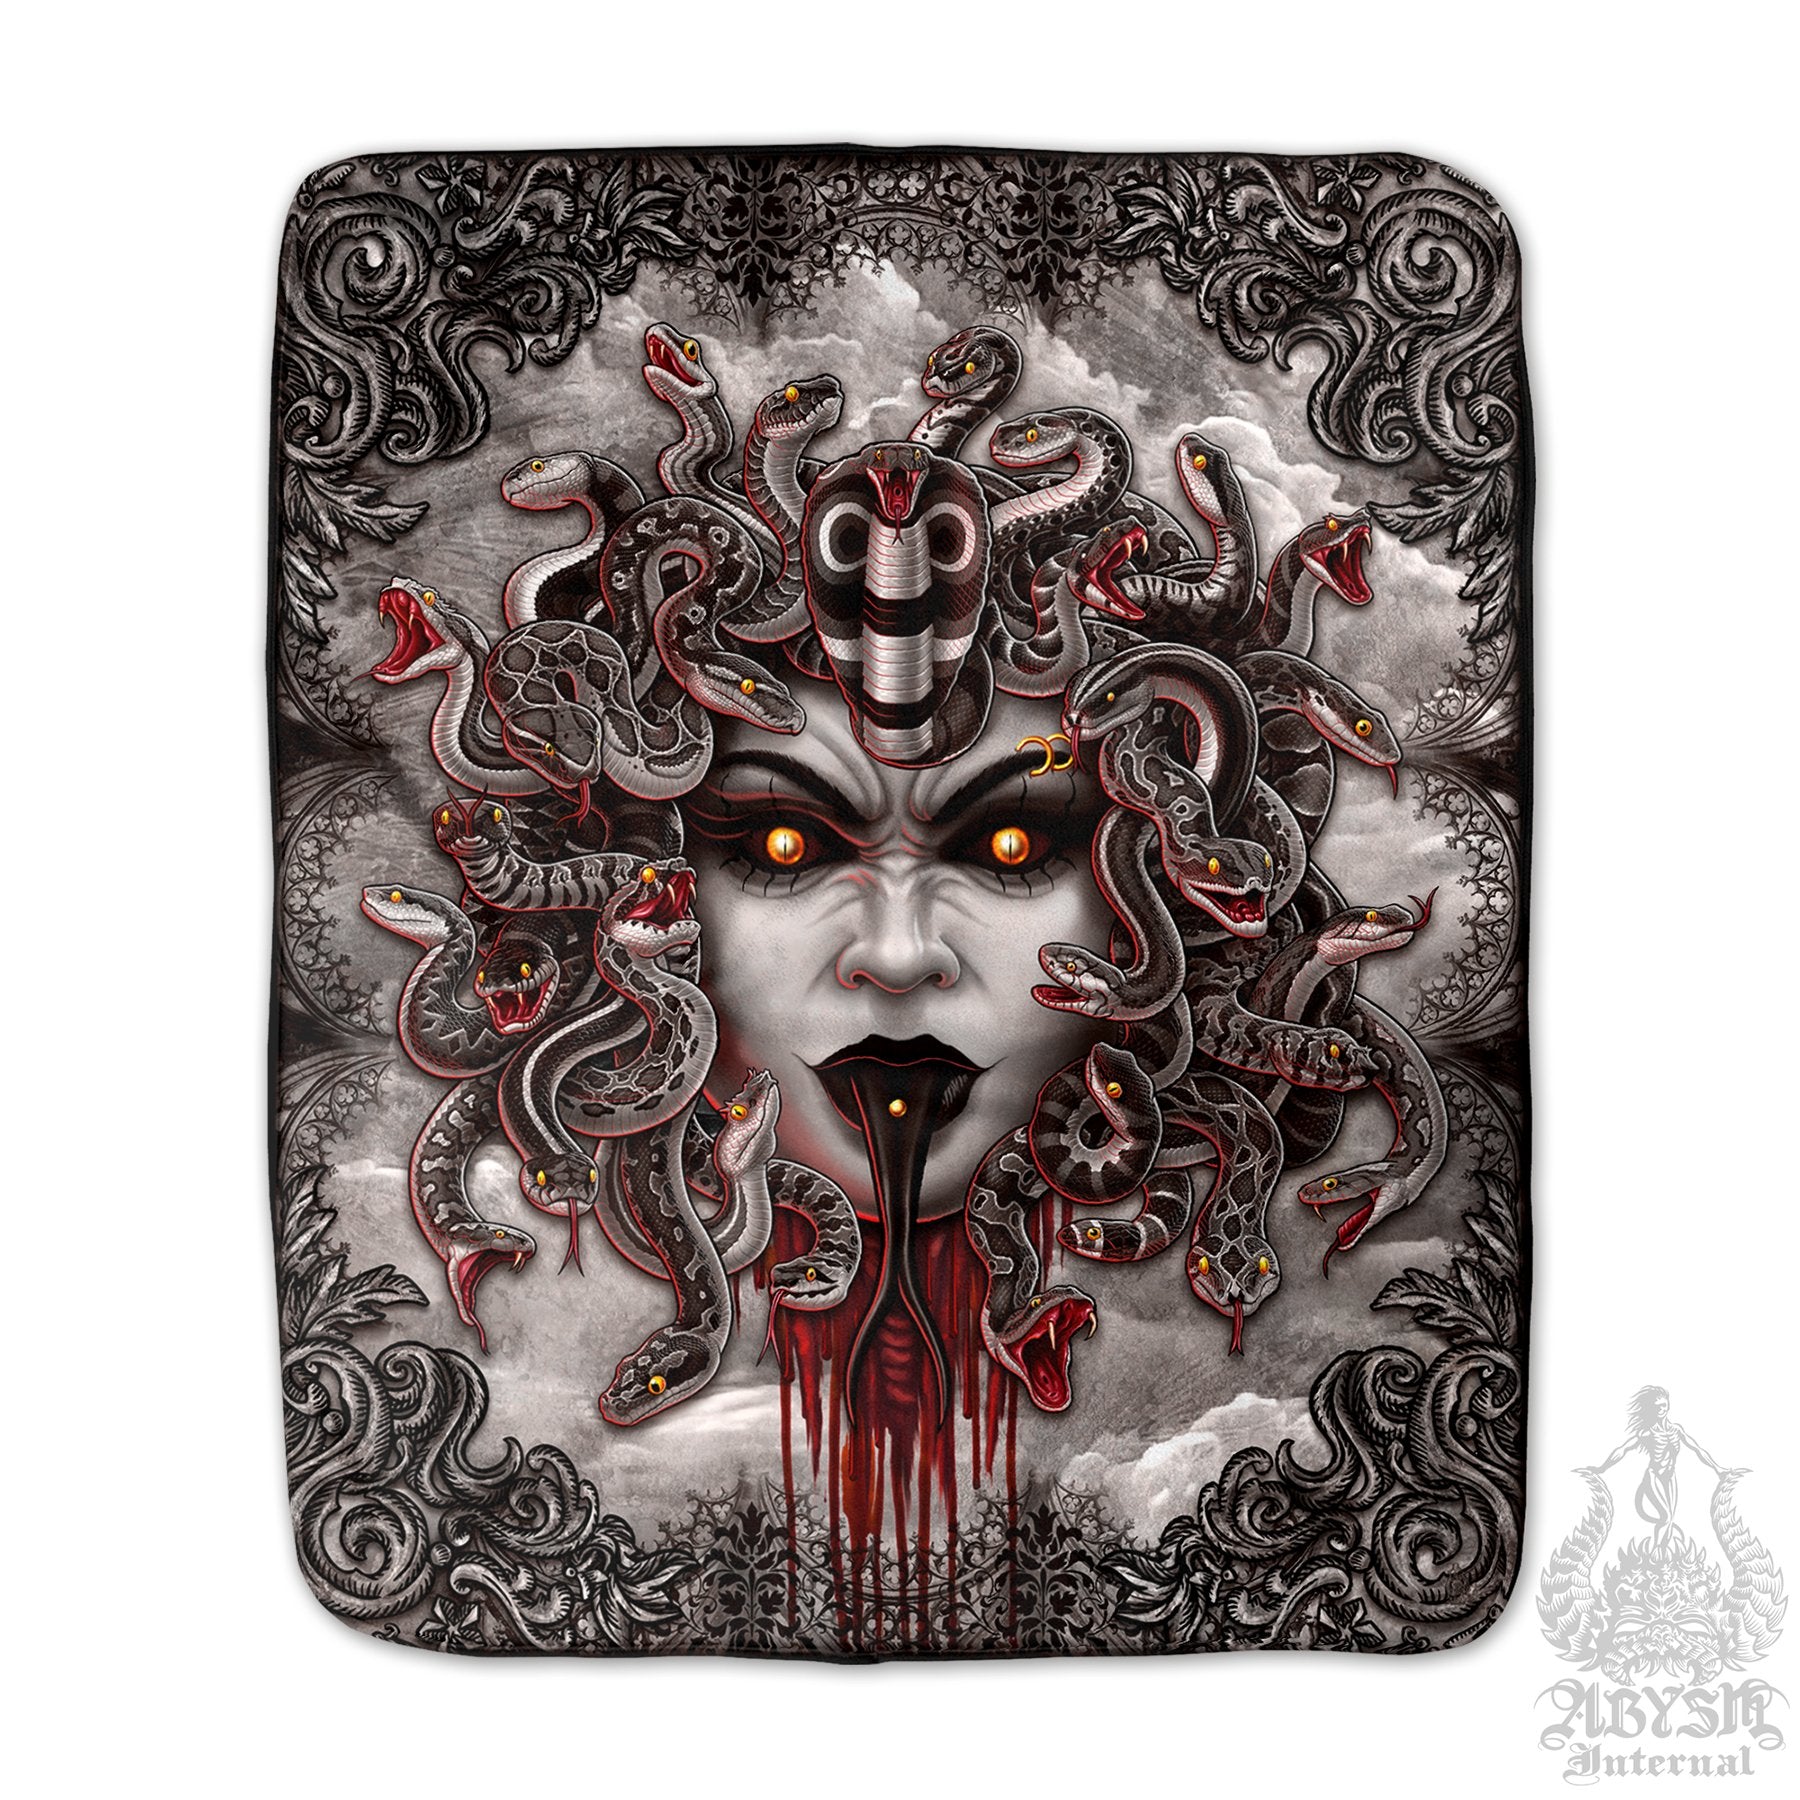 Medusa Sherpa Fleece Throw Blanket, Gothic Home Decor, Alternative Skull Art Gift - 4 Faces, Grey Snakes - Abysm Internal